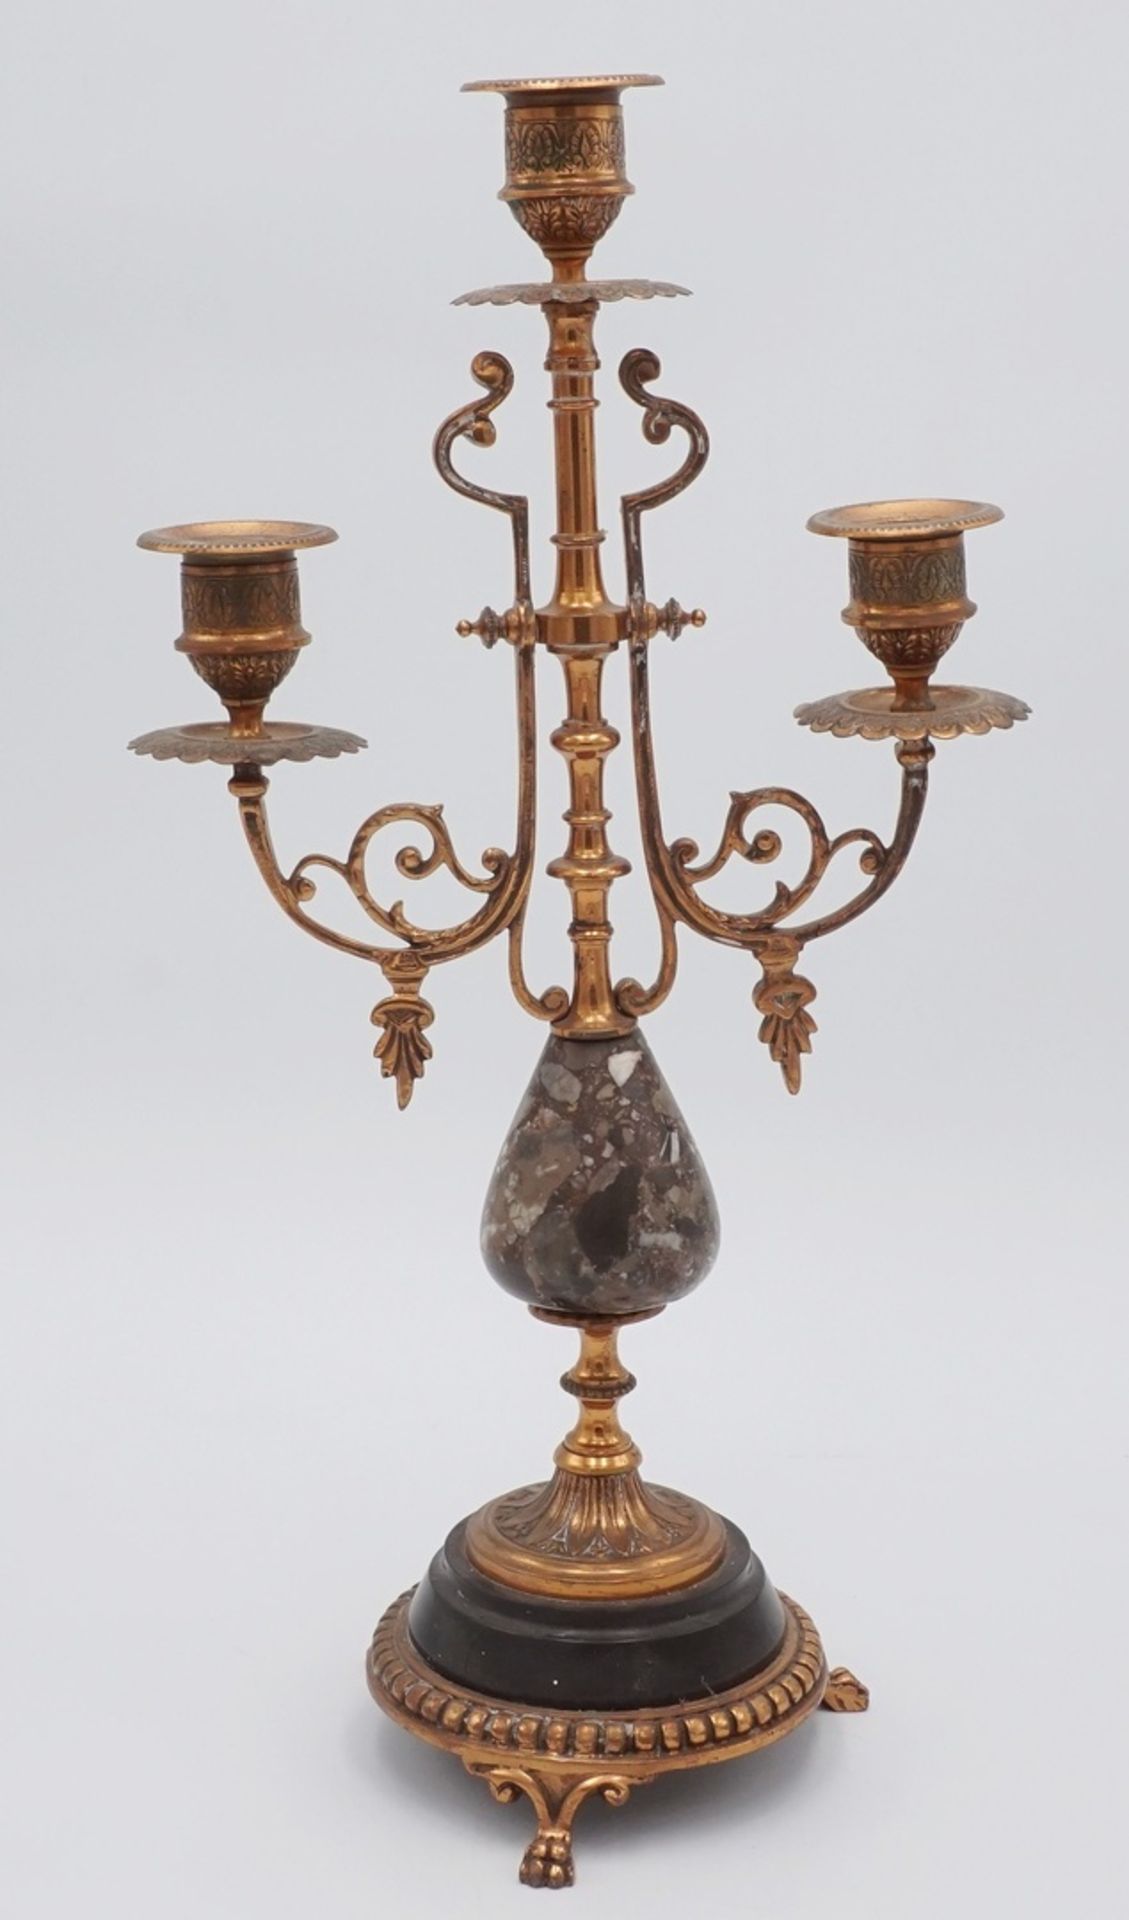 Tisch-Kandelaber, Leuchter, 2. Hälfte 18. Jh.Kupfer, Stein, dreiflammig, zwei geschwungene Arme zu - Bild 2 aus 2